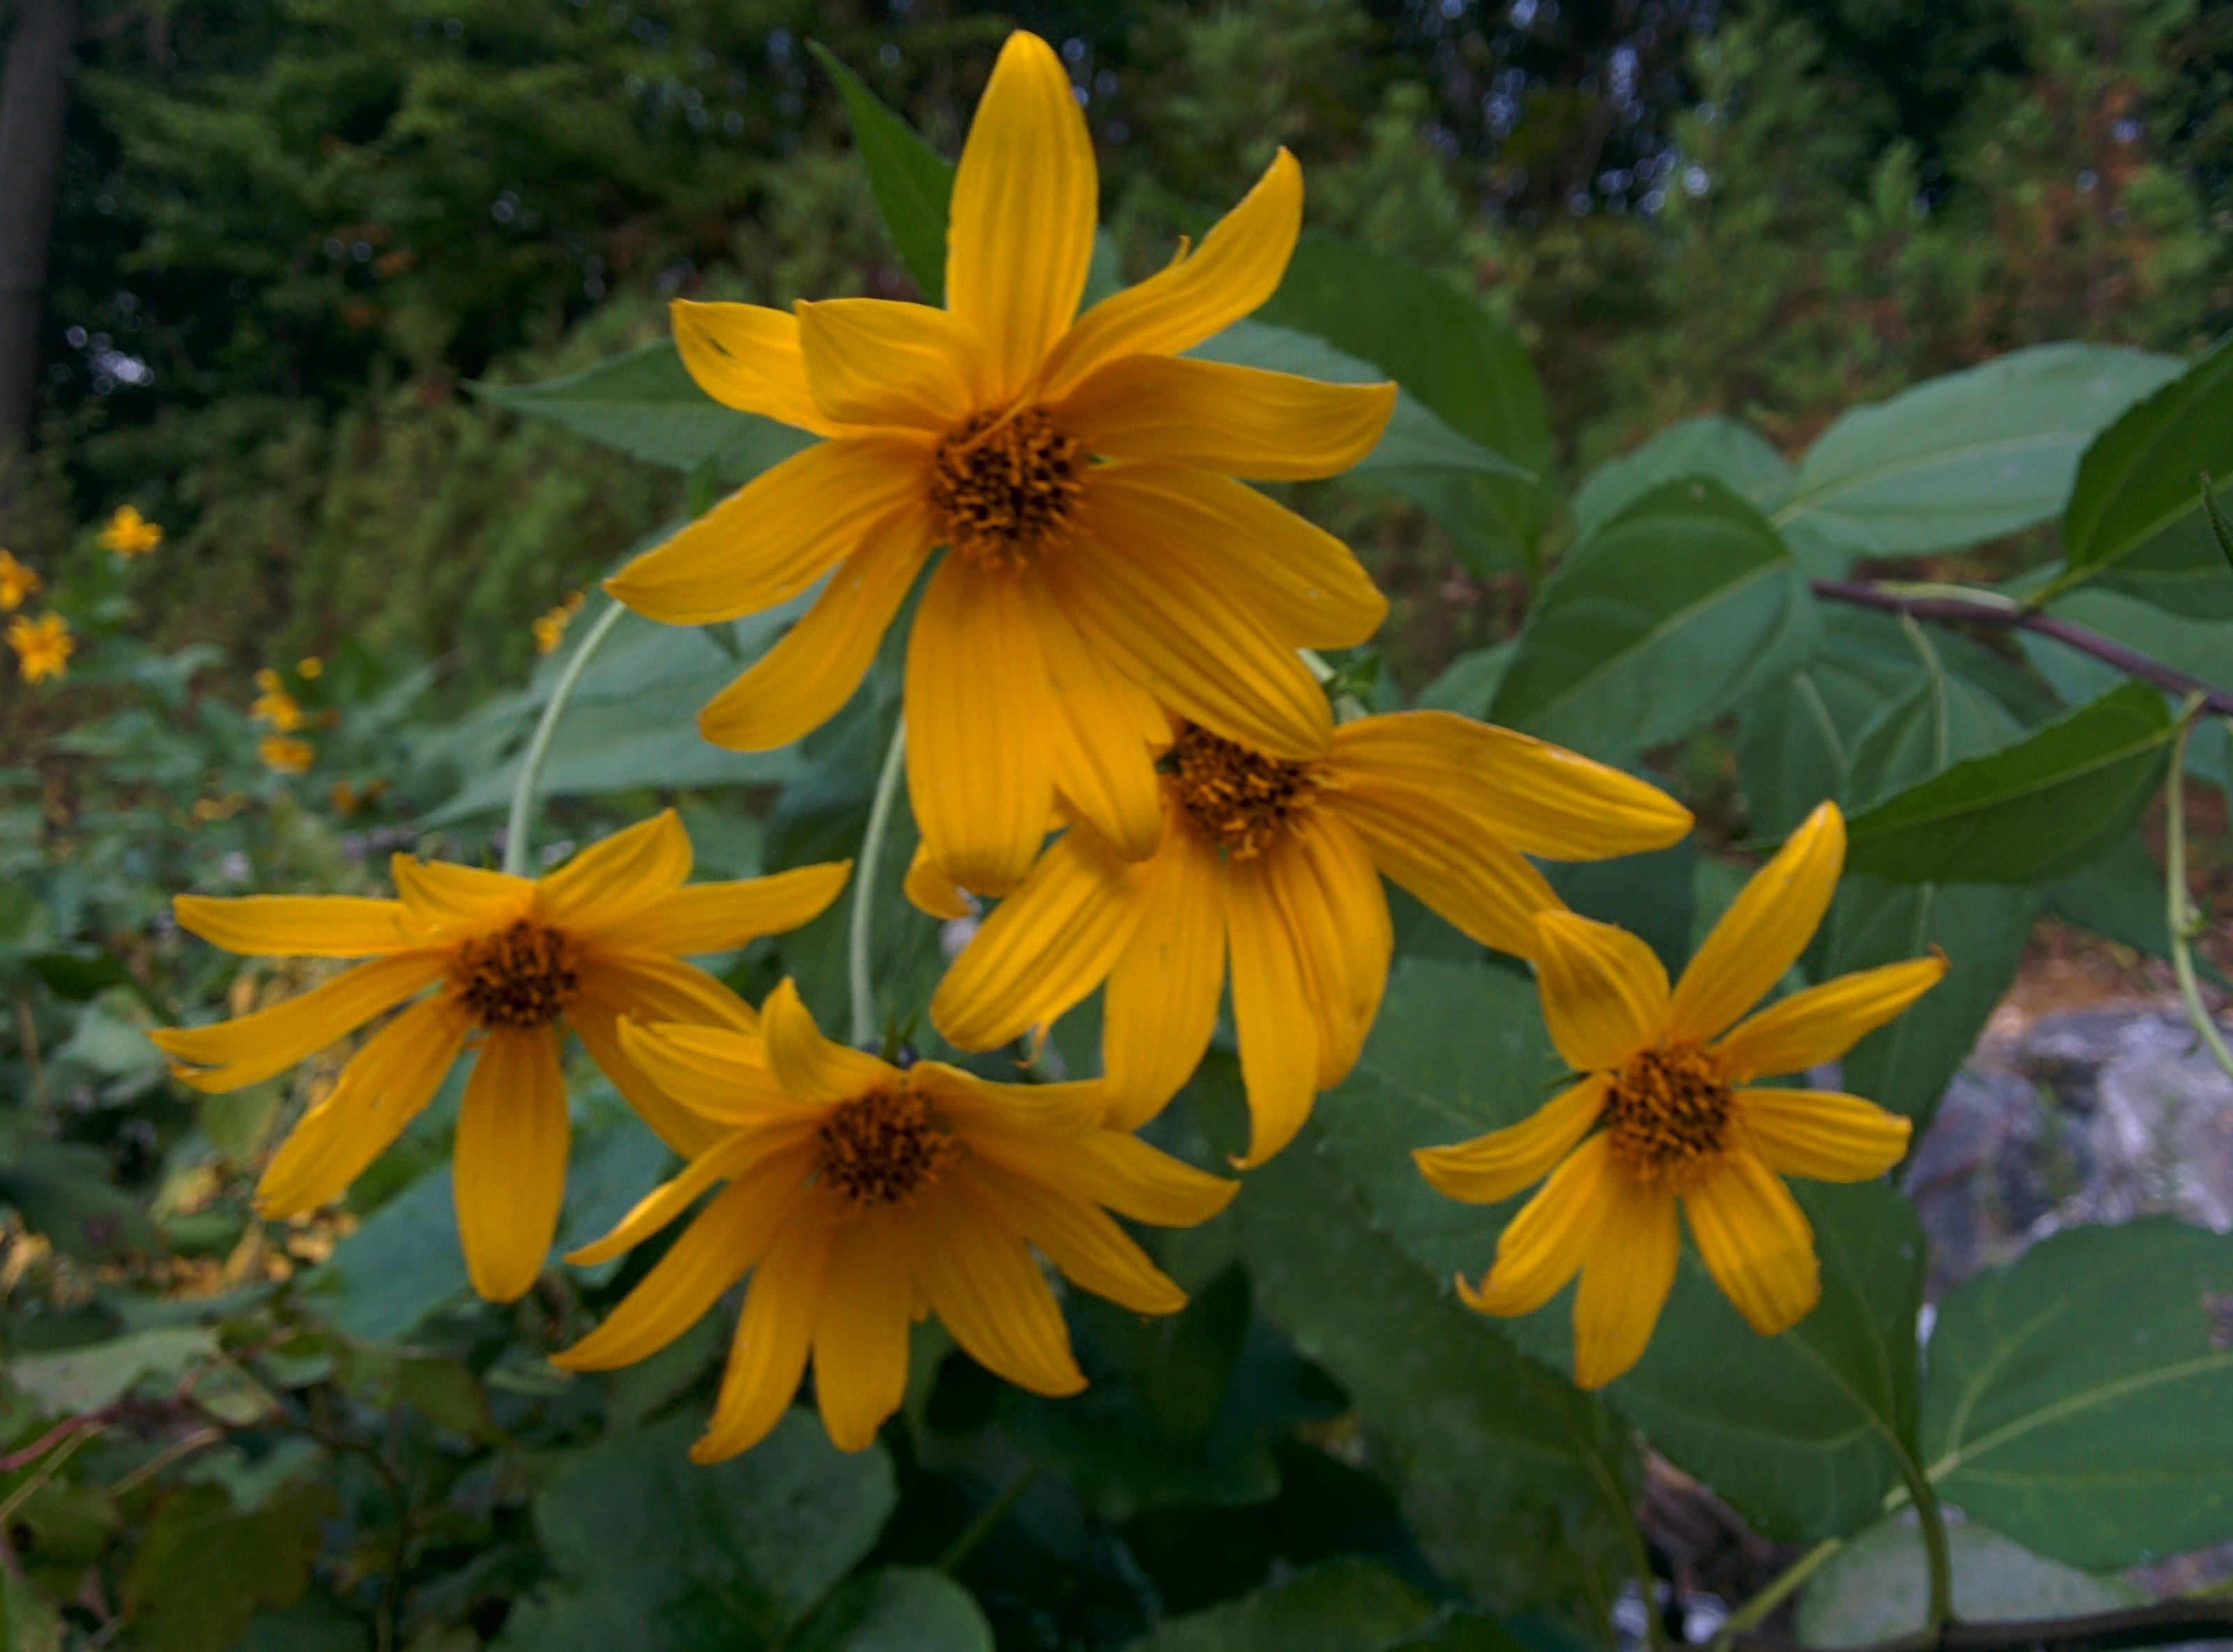 IMG_20151003_155843.jpg 키큰 풀에서 핀 노란색 꽃, 뚱딴지